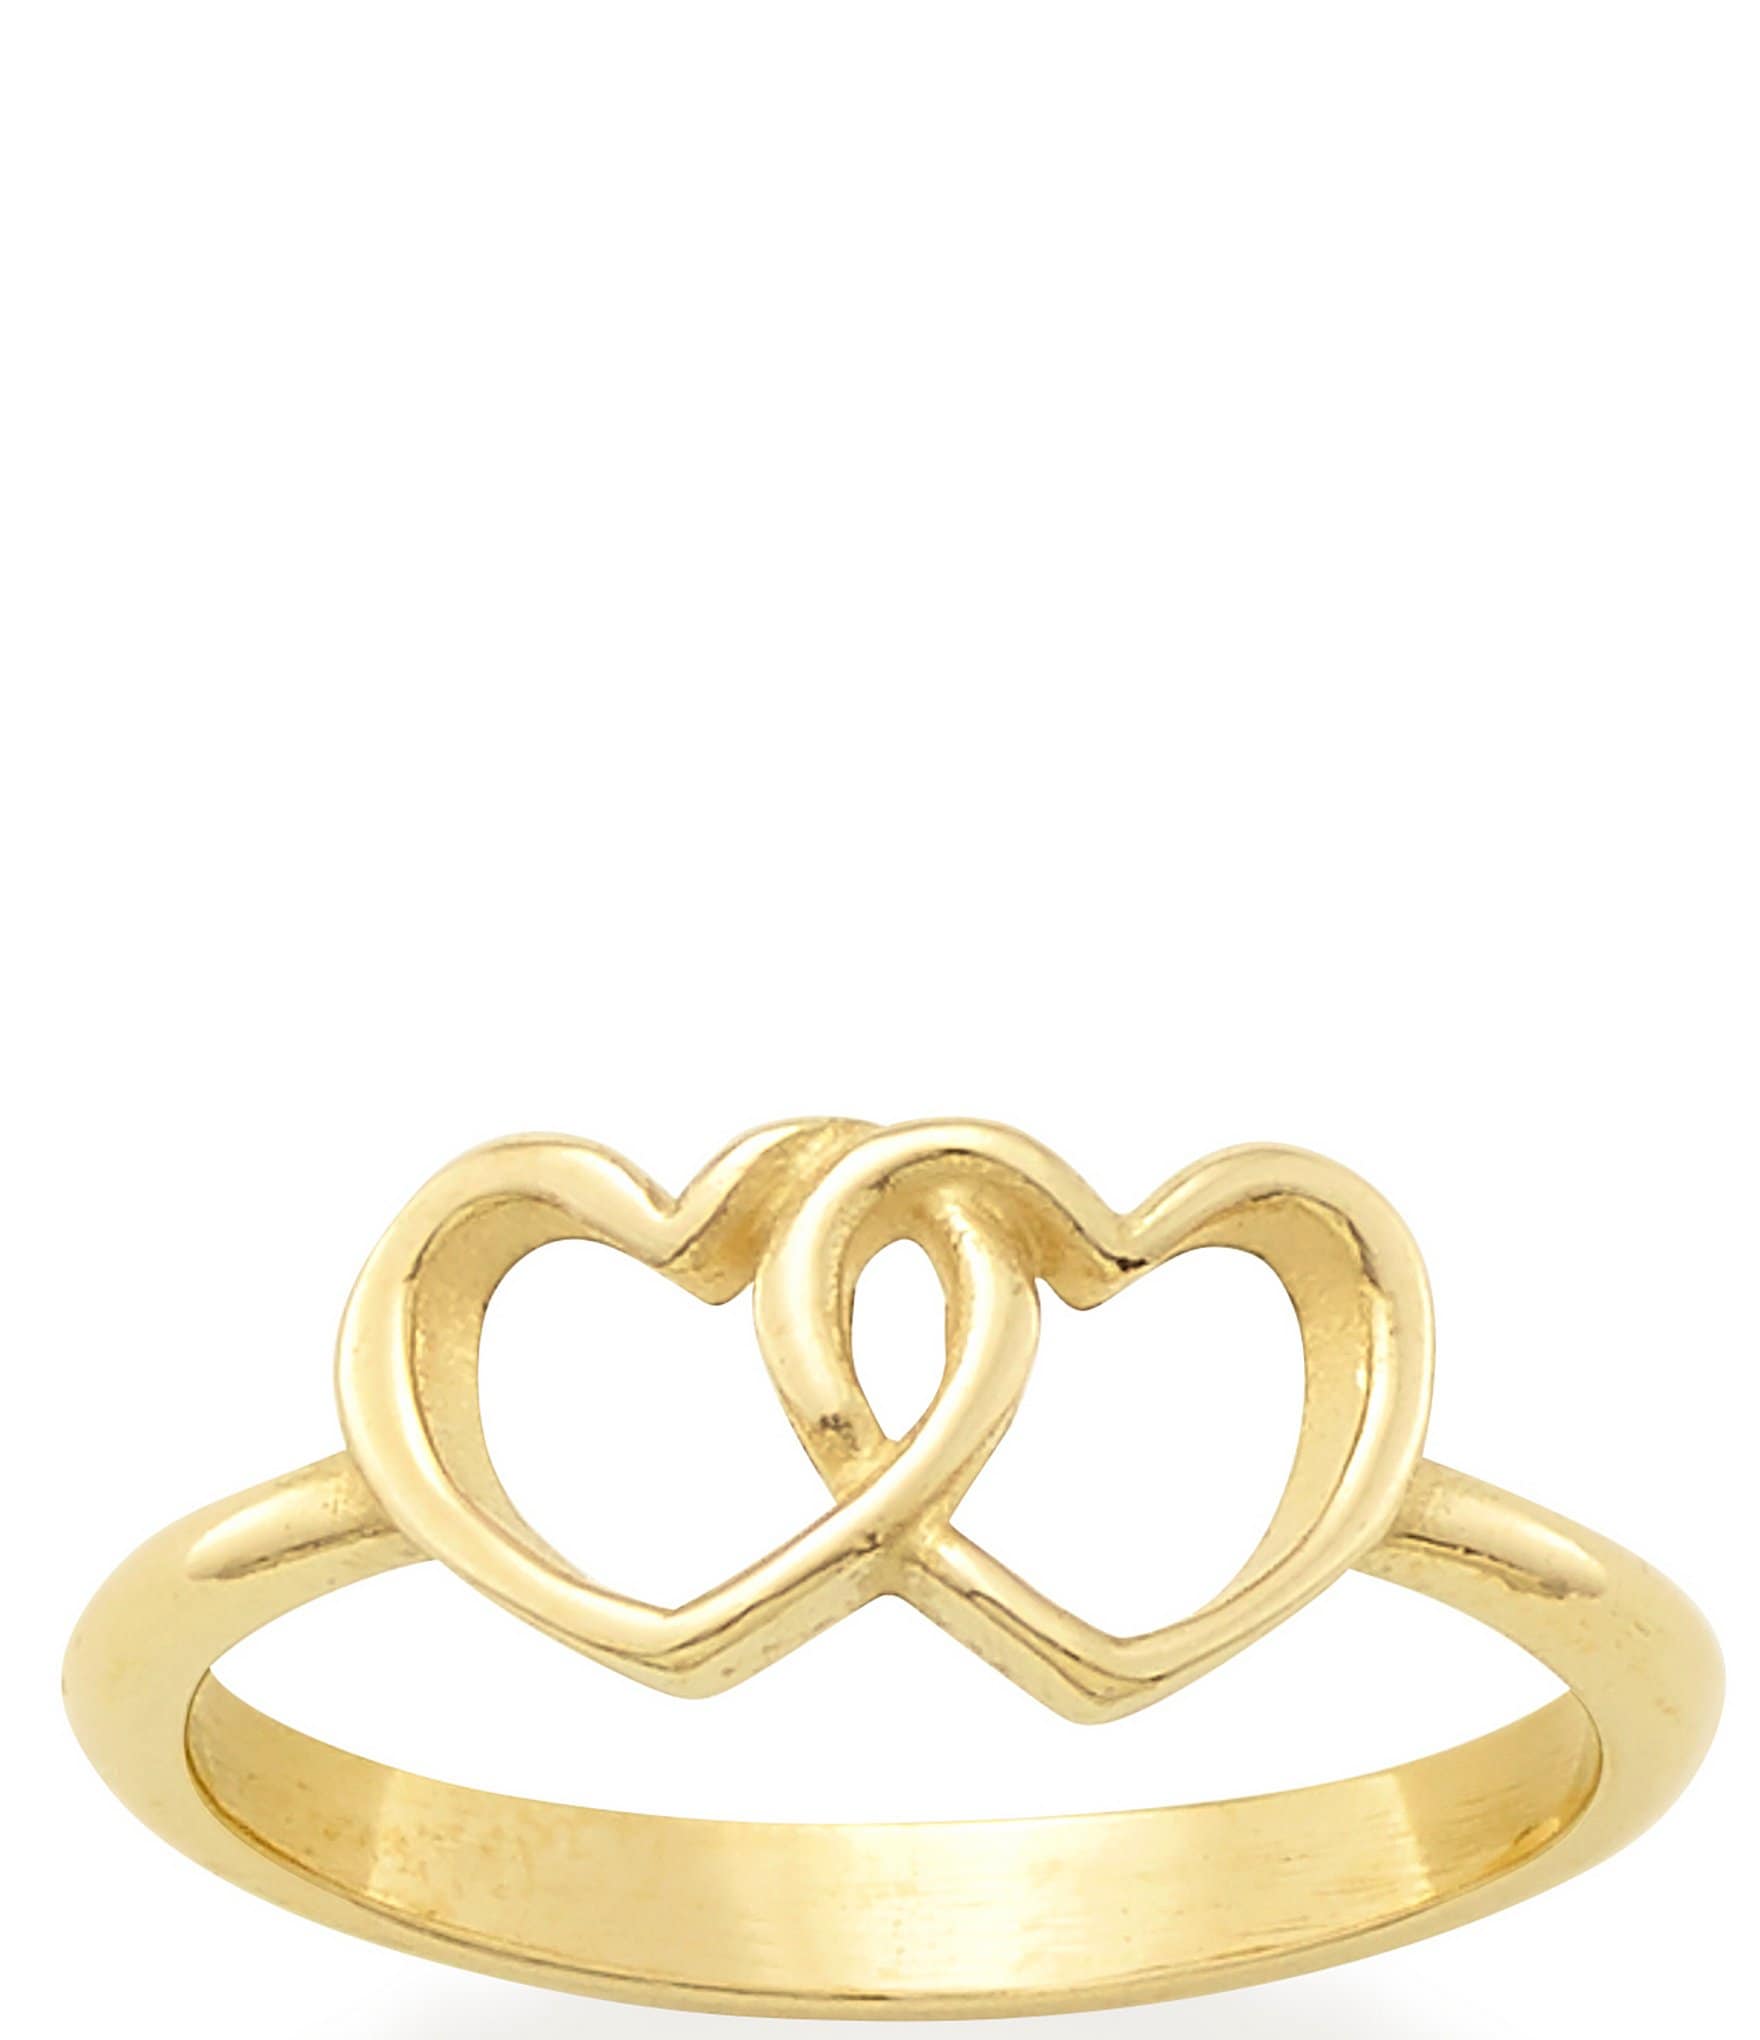 Ari Heart Gold Band Ring in Iridescent Drusy | Kendra Scott